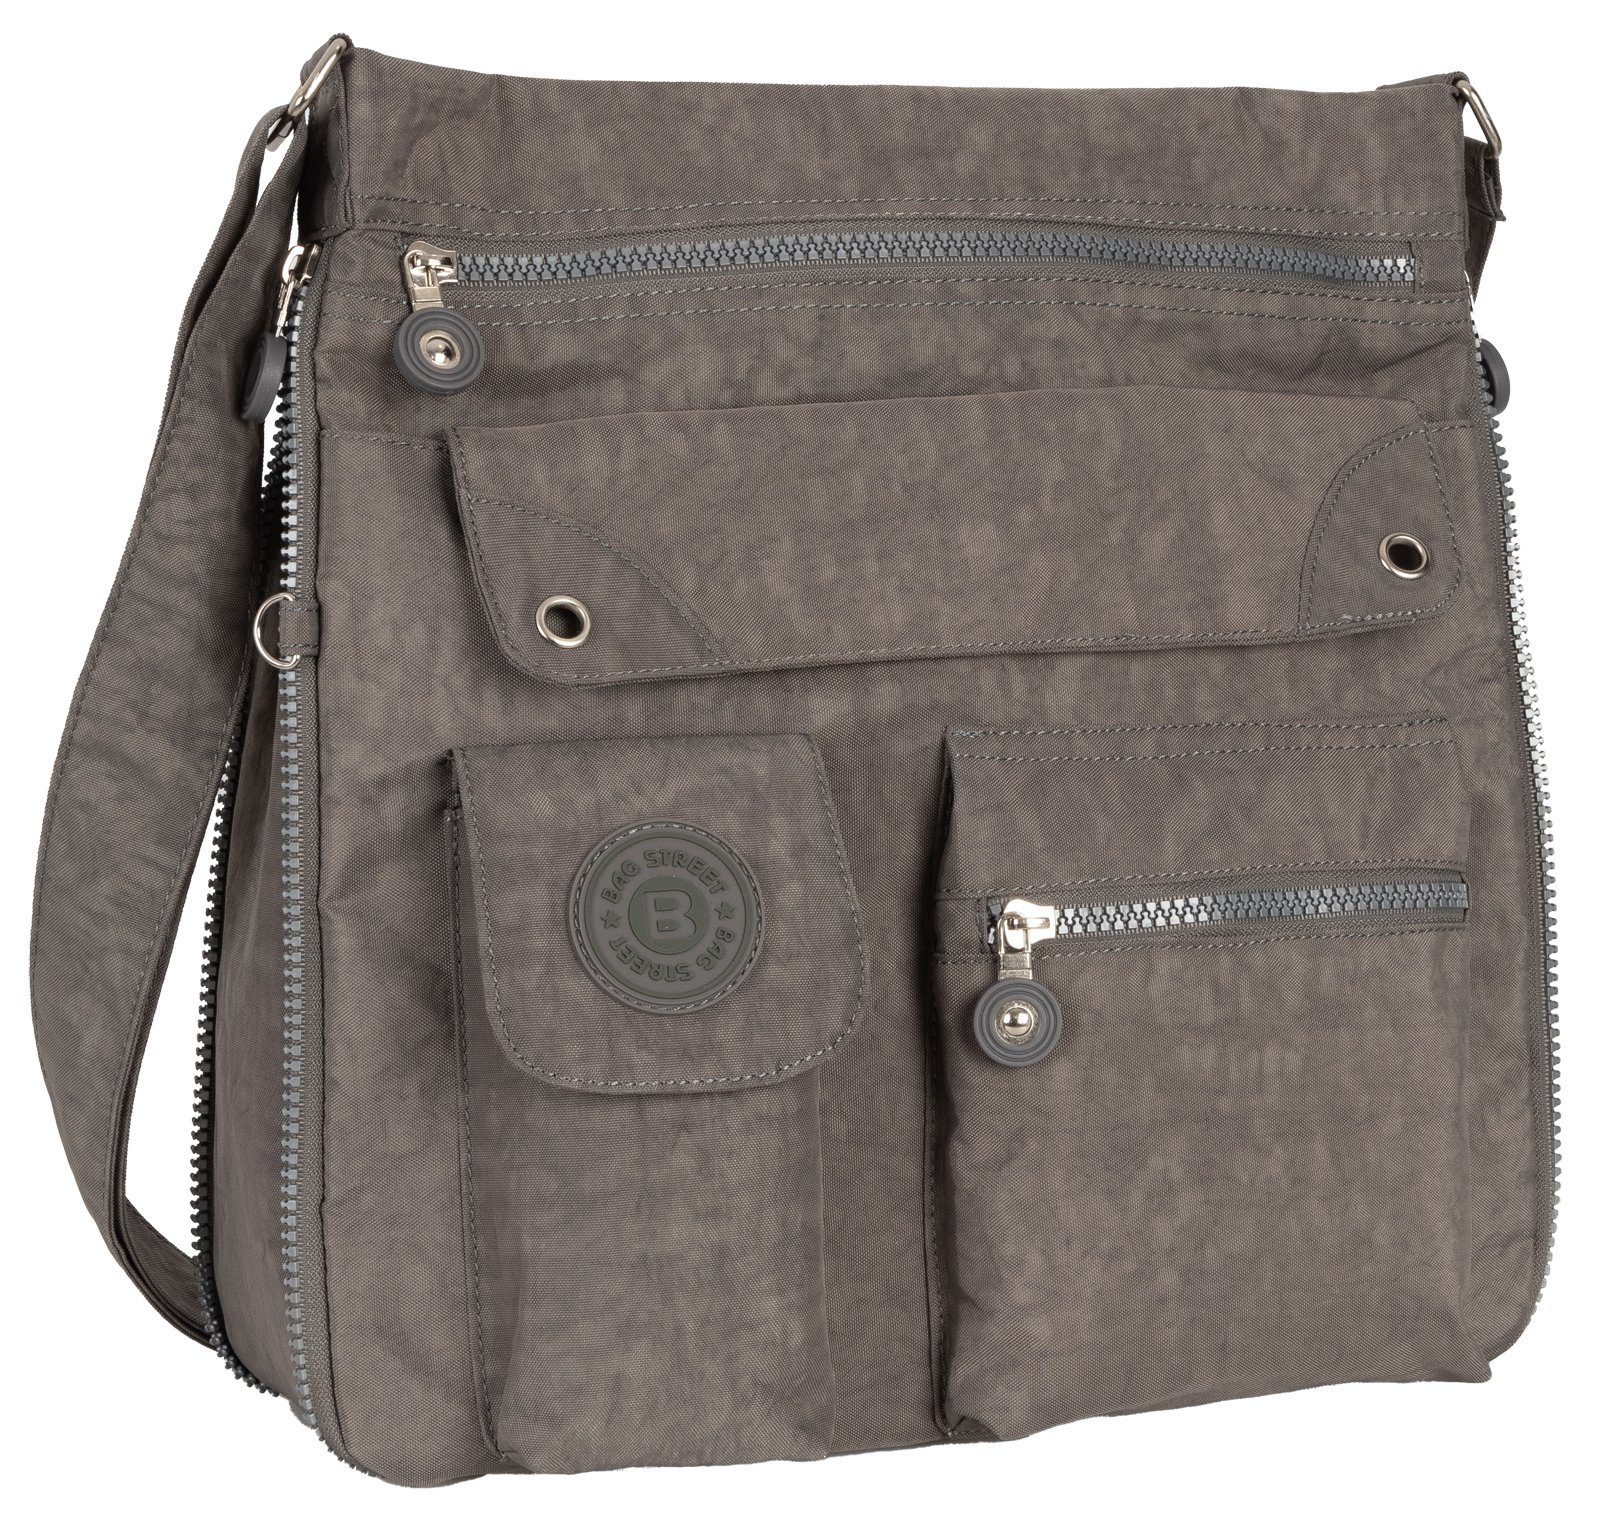 BAG STREET Schlüsseltasche Damentasche Umhängetasche Handtasche Schultertasche Schwarz, als Schultertasche, Umhängetasche tragbar Grau